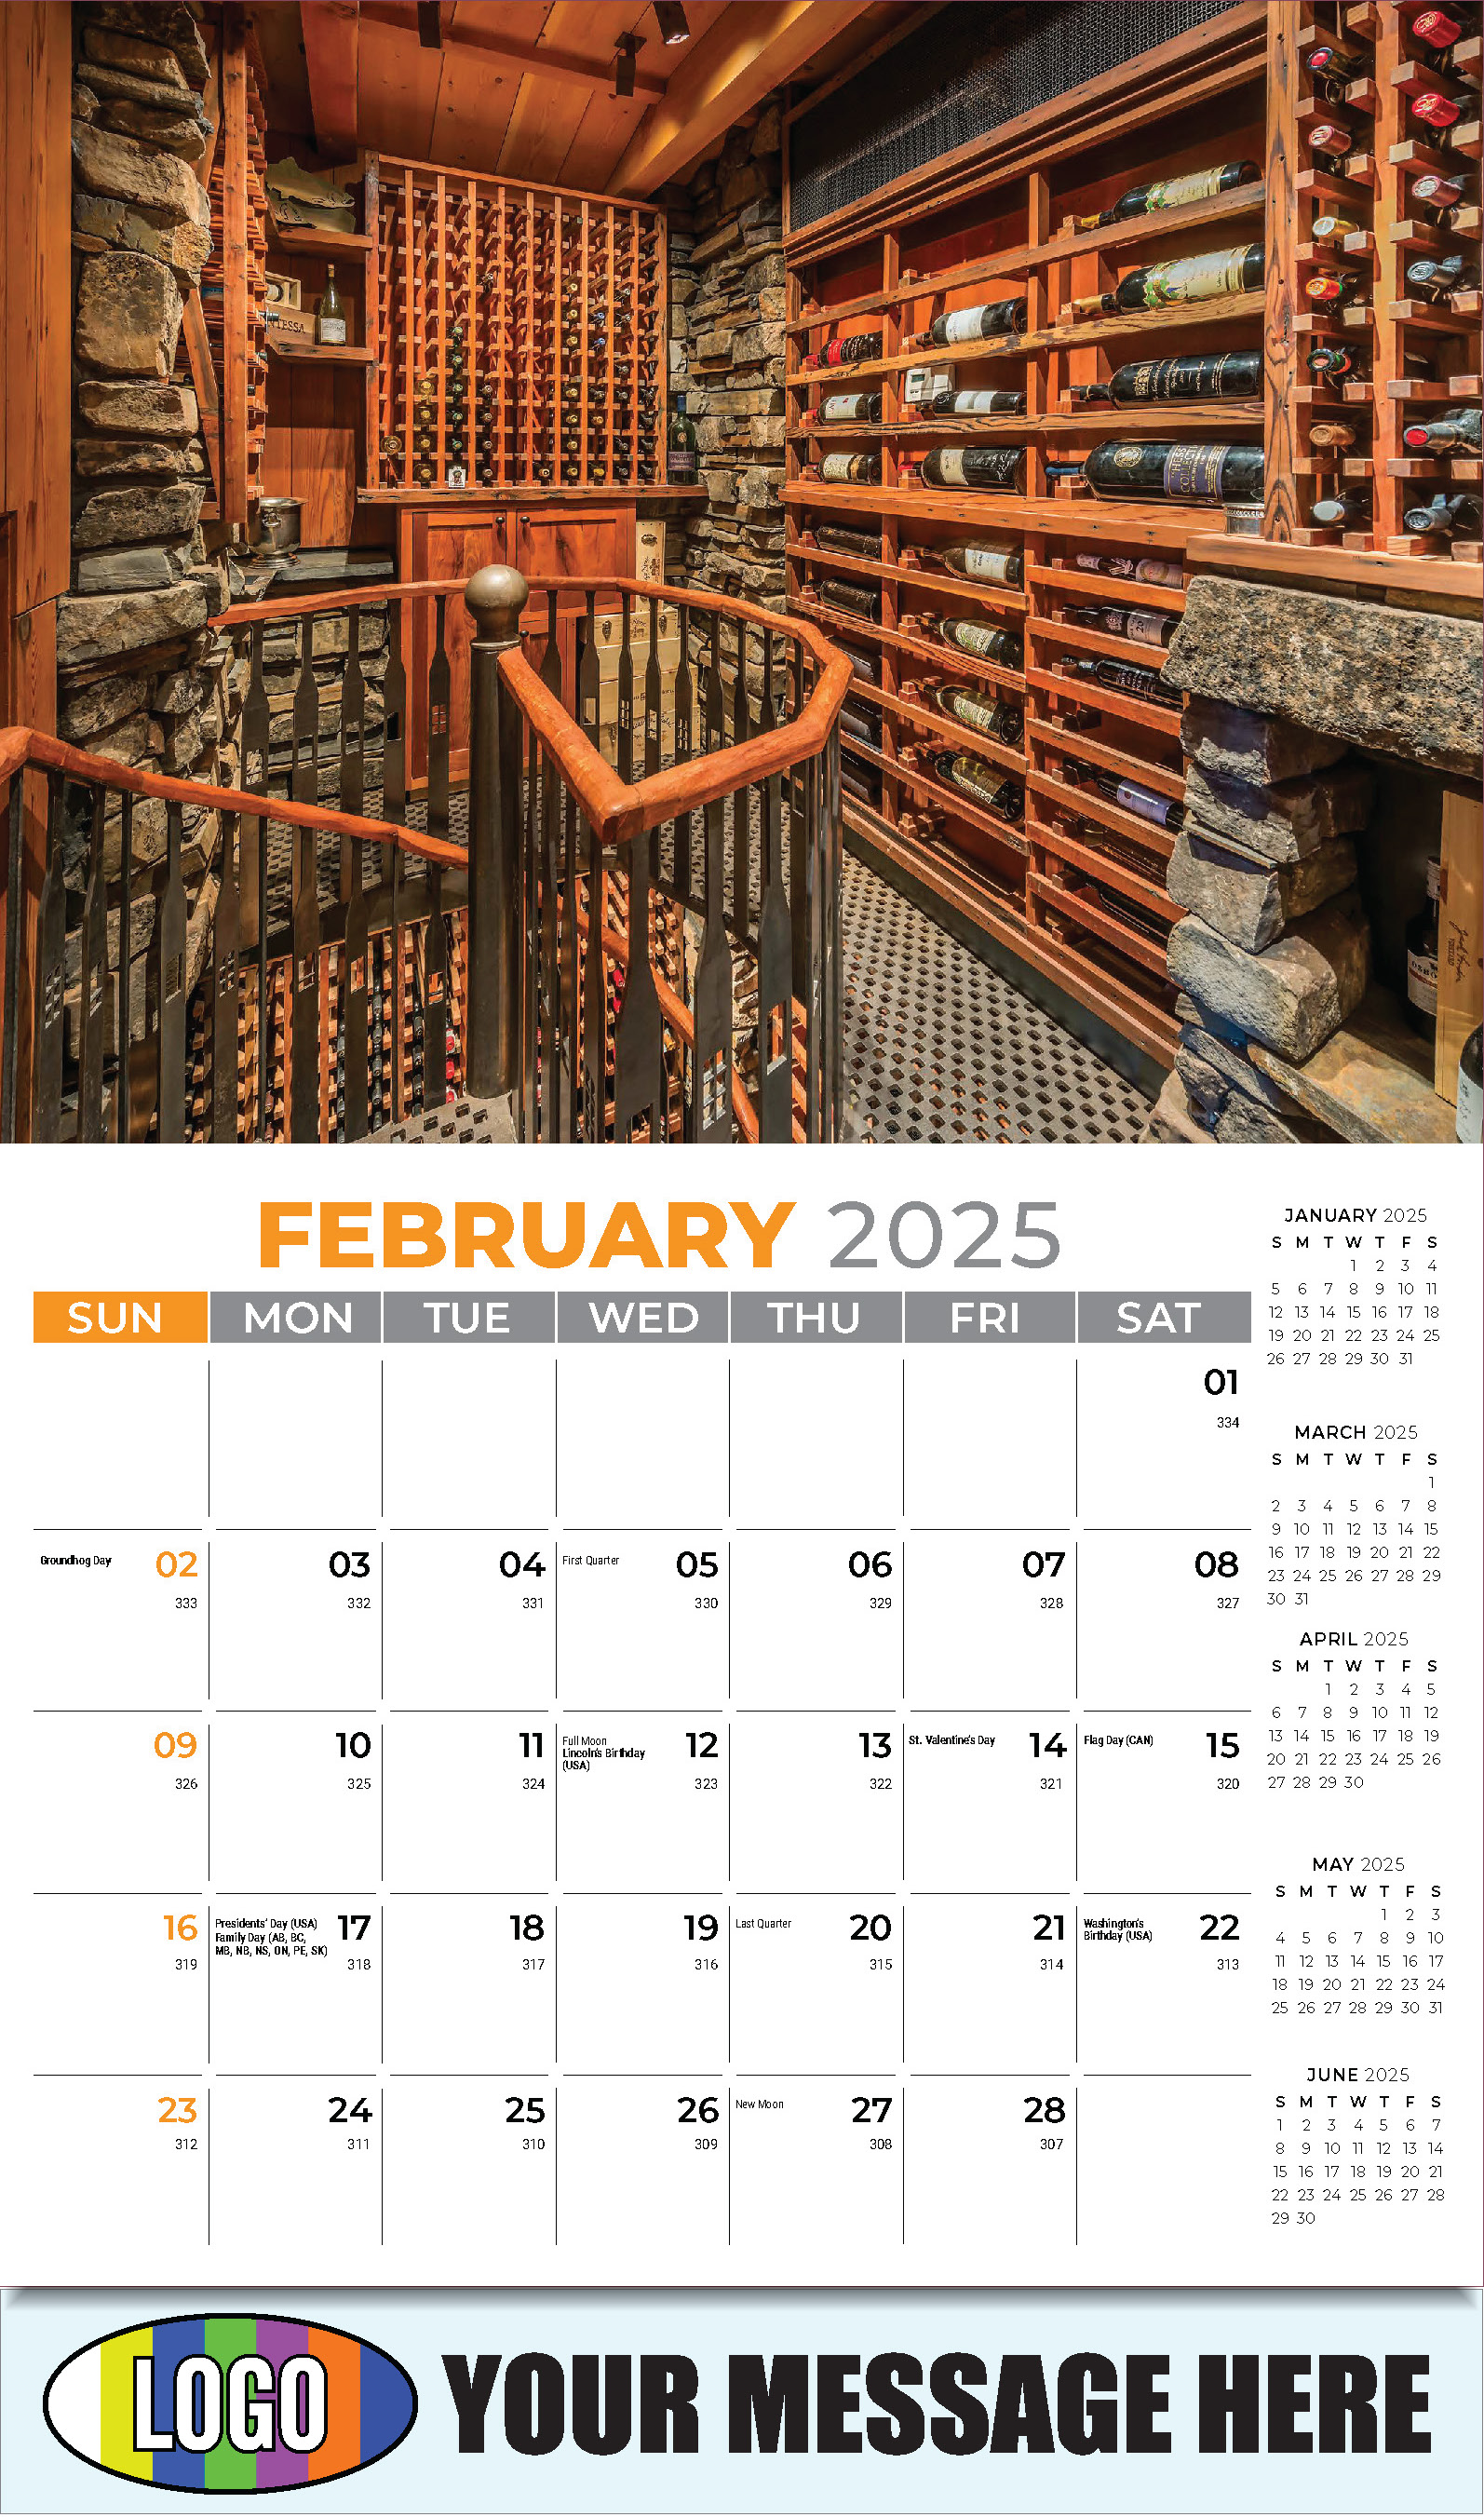 Decor and Design 2025 Interior Design Business Promotional Calendar - February